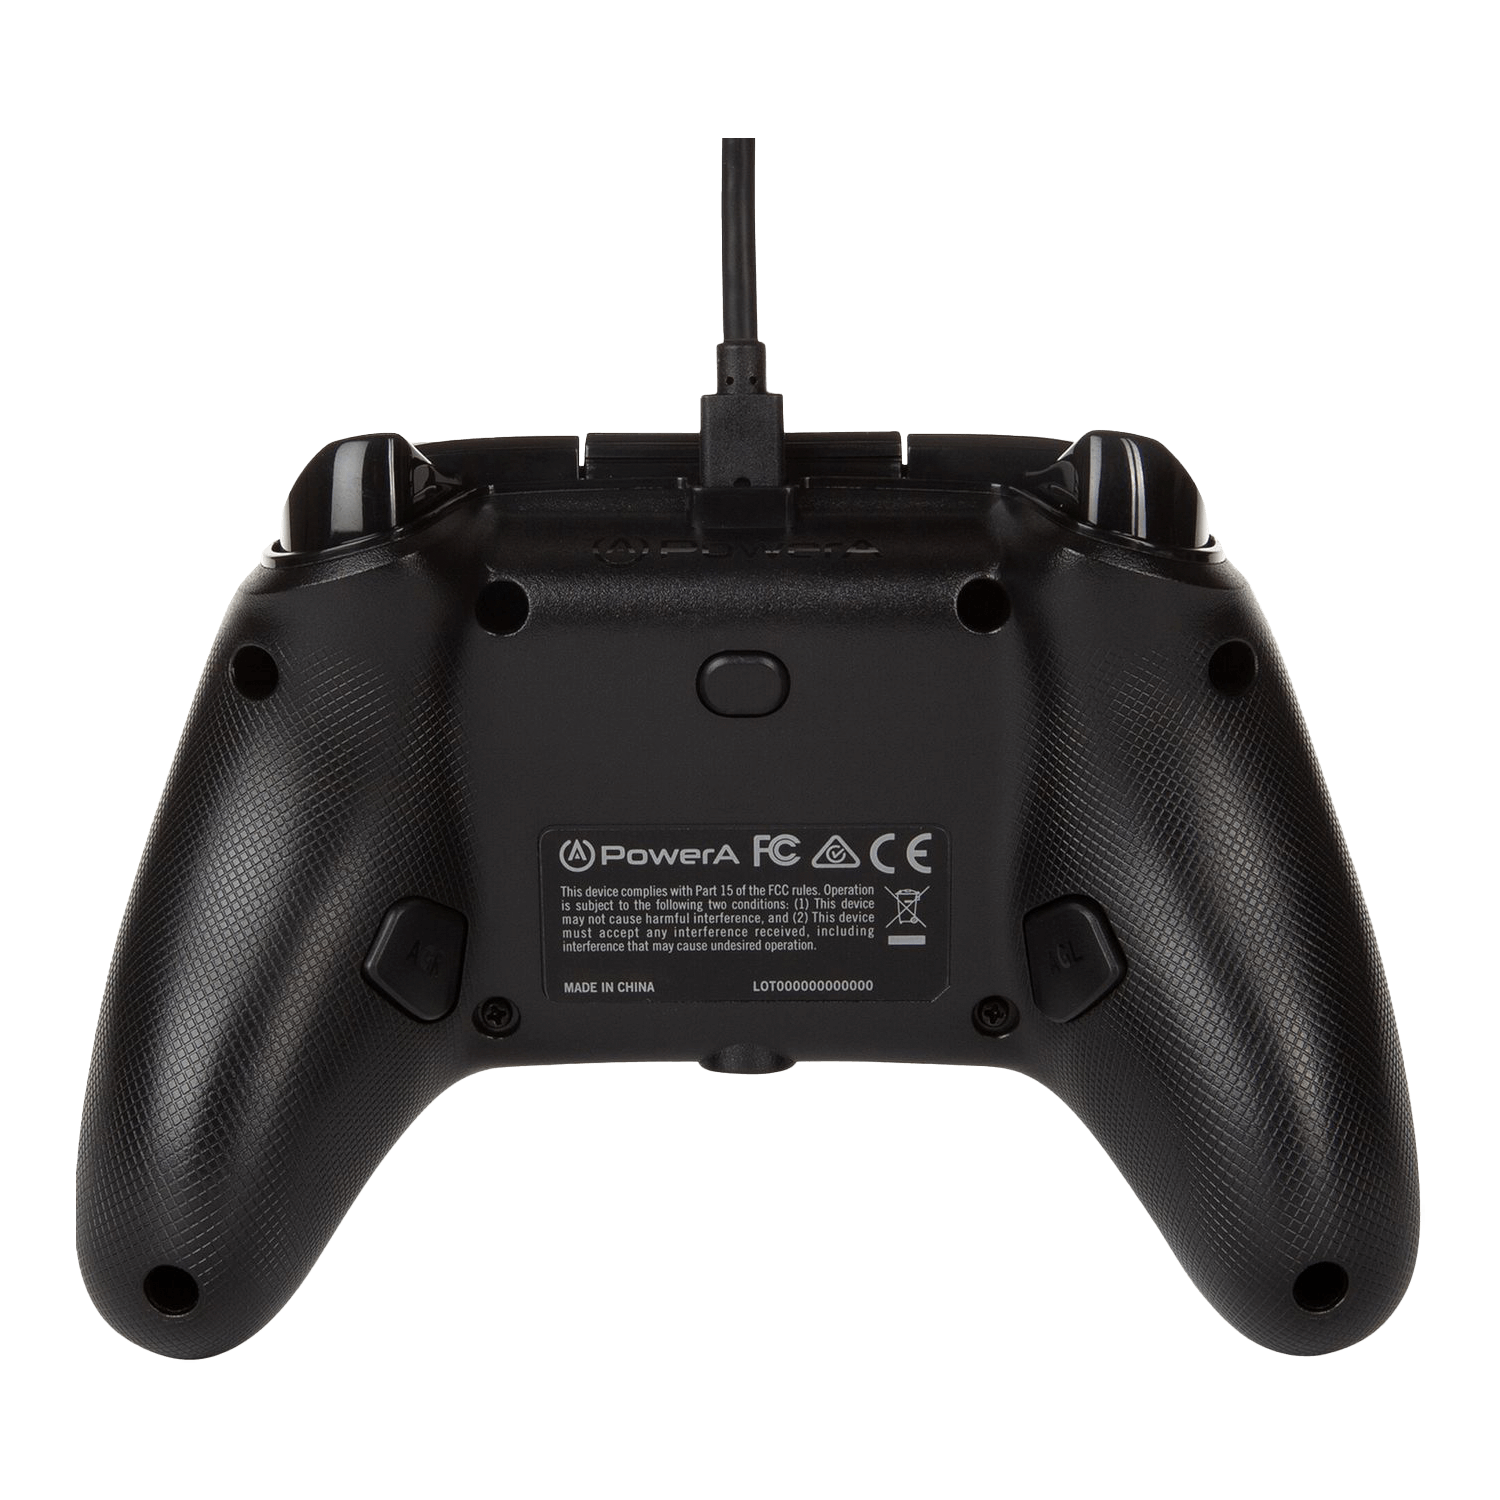 Controle PowerA Enhanced Wired para Xbox - Metallic White Camo (PWA-A-METALLIC)